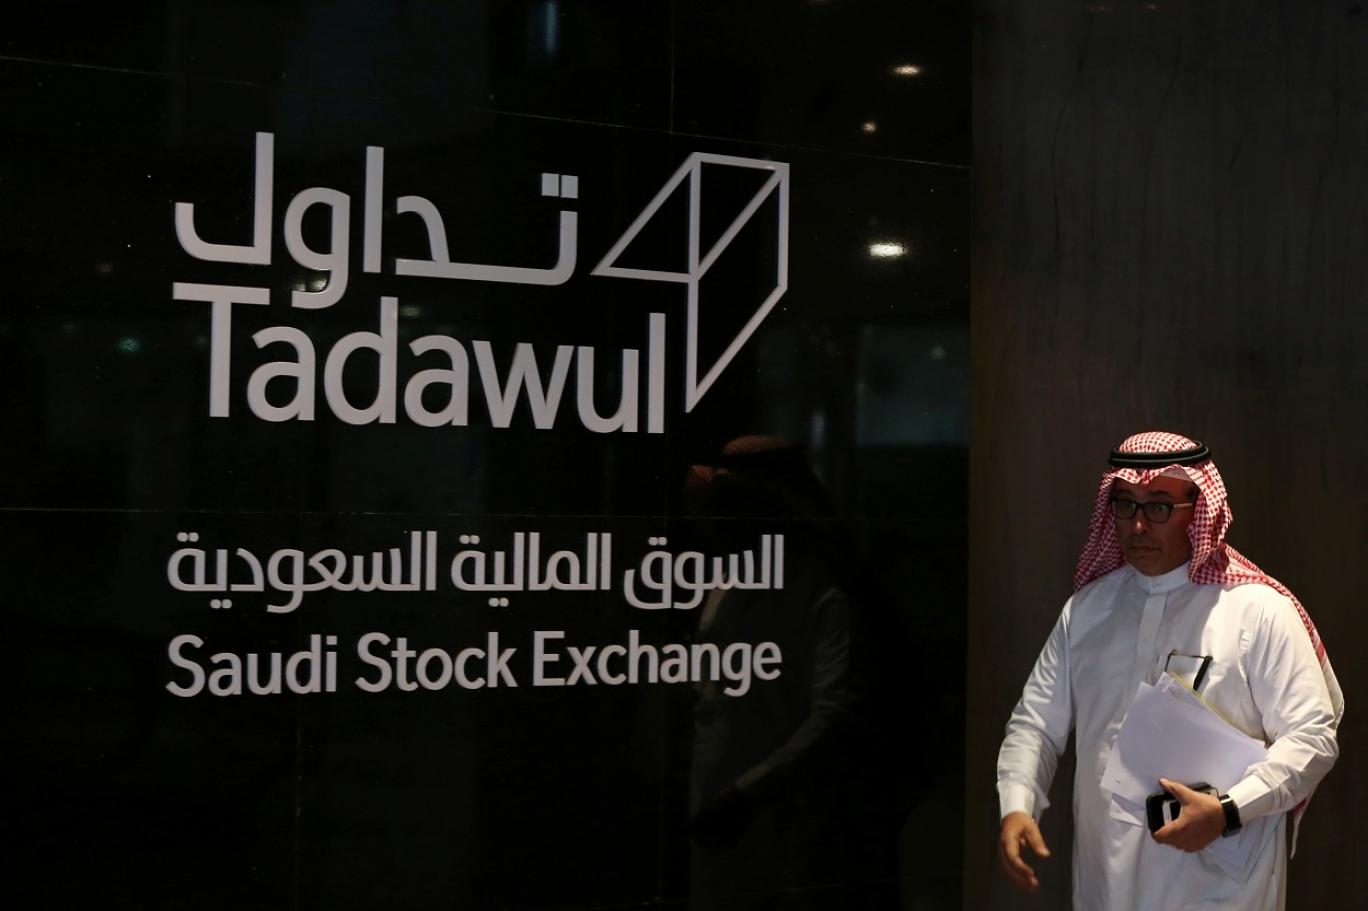 مكاسب قوية للأسهم السعودية في ثاني أيام اكتتاب أرامكو اندبندنت